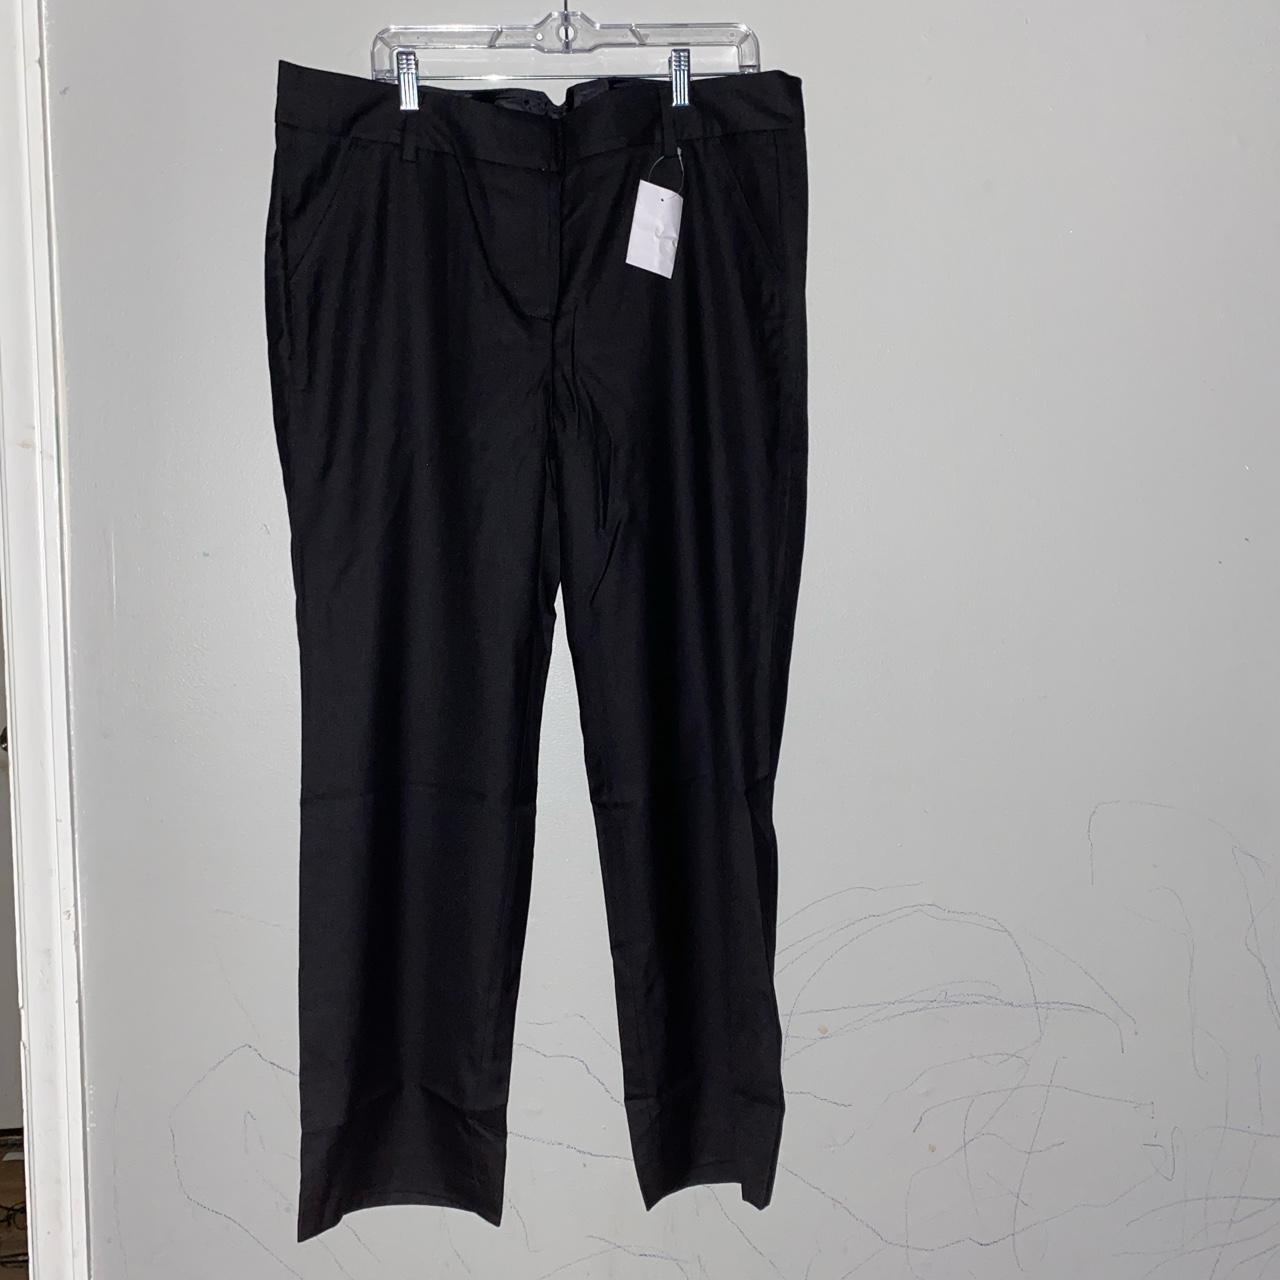 Land end women's dress pants 16 brand new - Depop